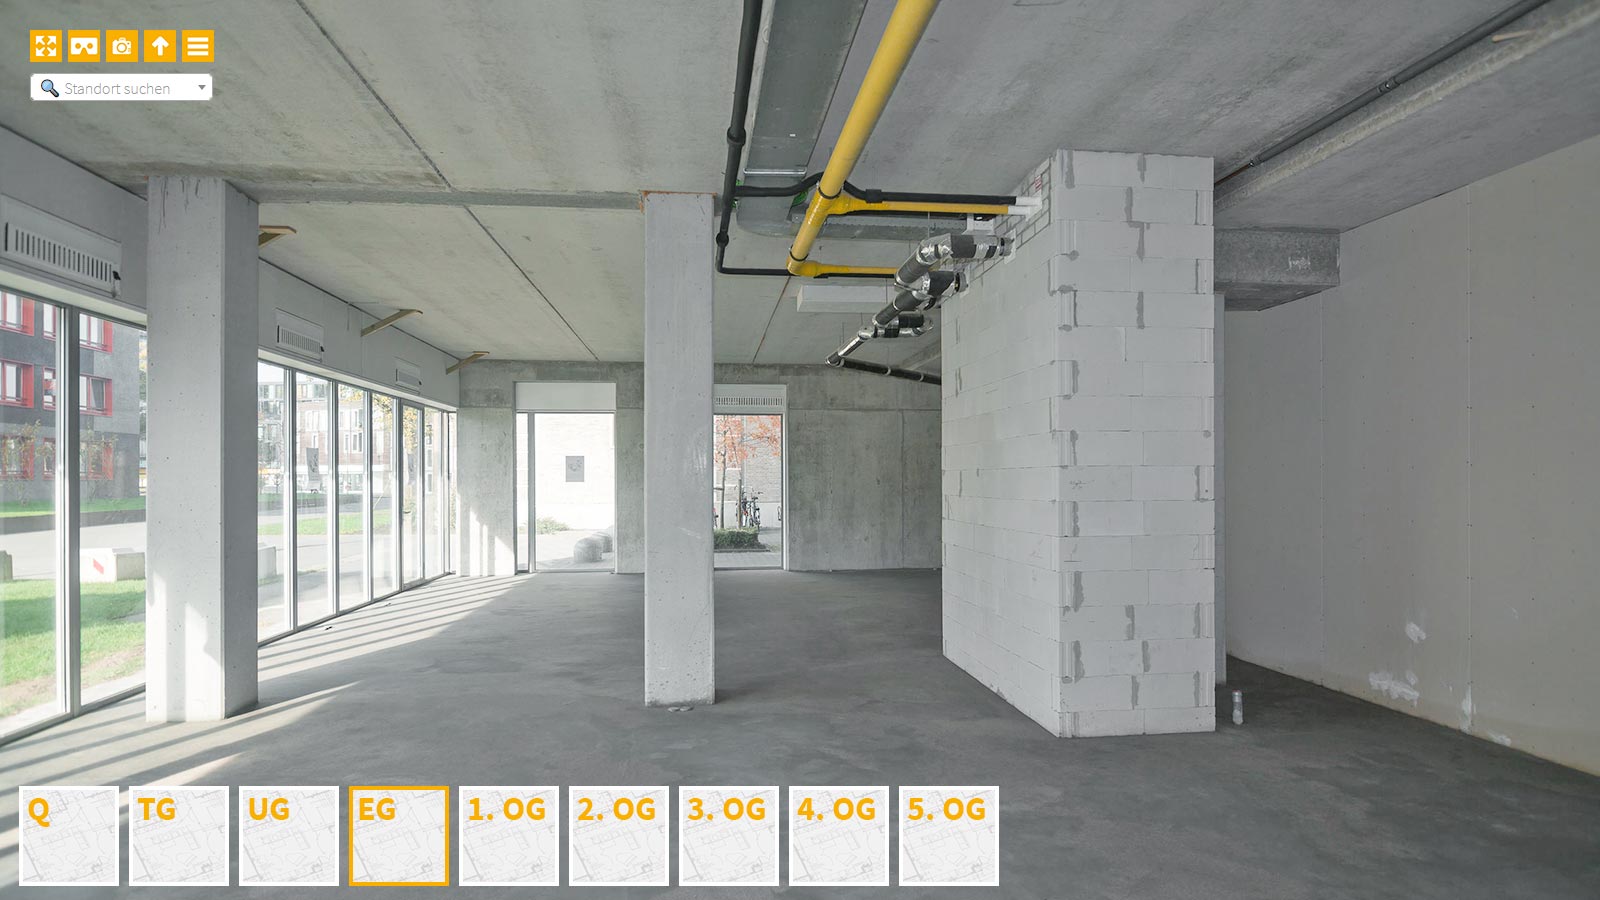 Baudokumentation 360 Grad bei gestörten Projekten in 


	


	


	


	


	


	


	


	


	


	Berlin









, Bilddokumentation als virtueller Rundgang